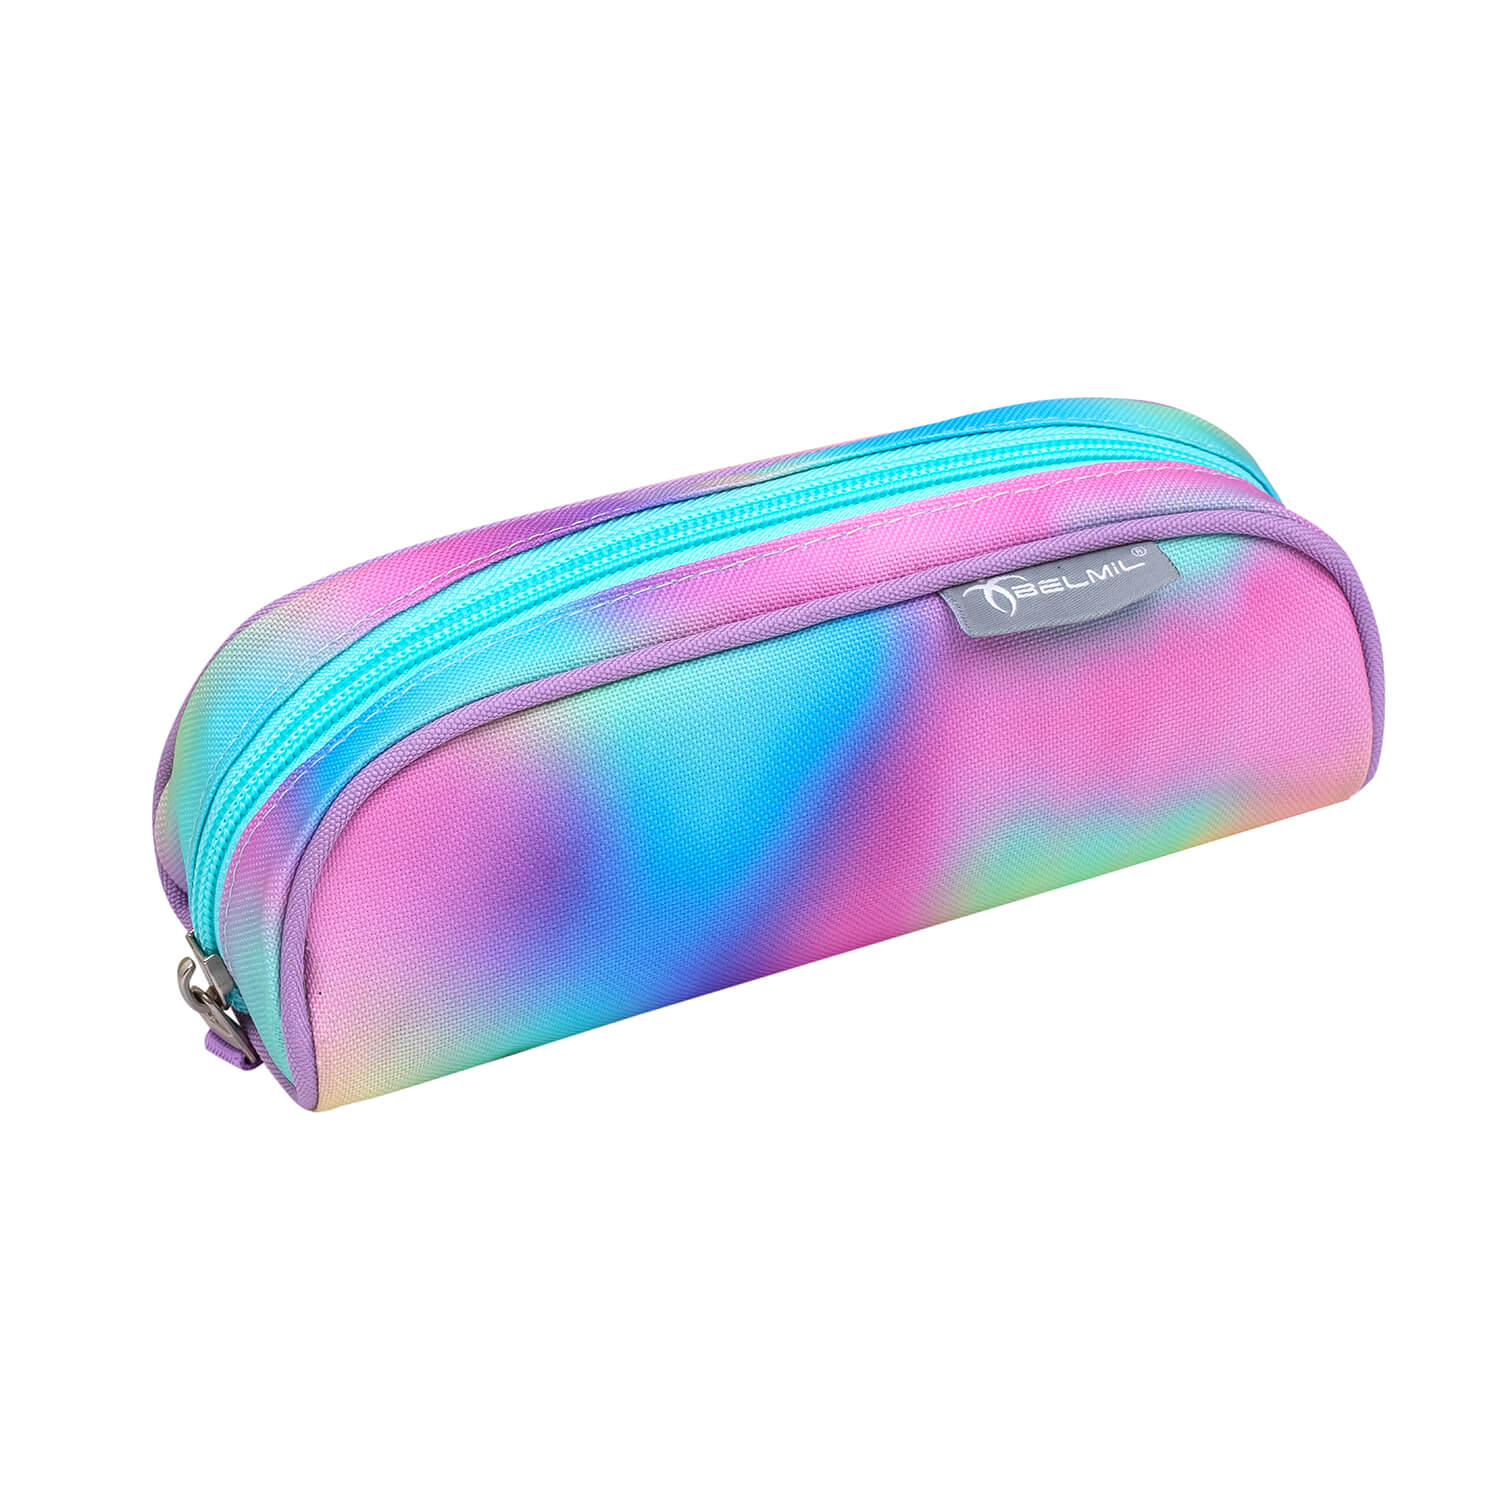 Mini-Fit Rainbow Color schoolbag set 4 pcs